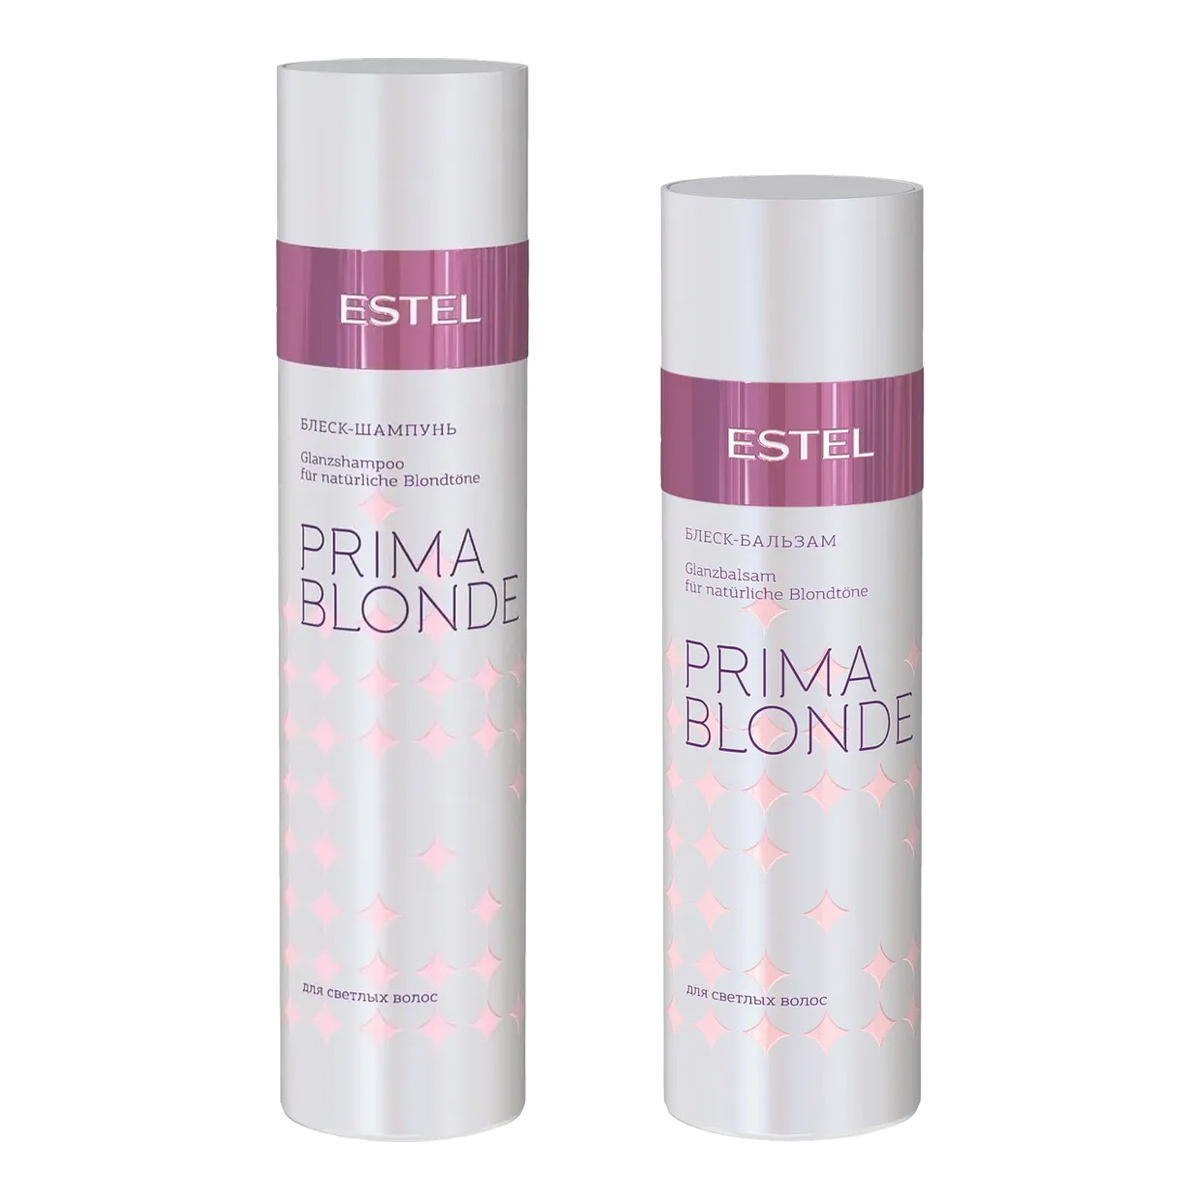 Estel Набор для блеска светлых волос: бальзам 200 мл + шампунь 250 мл (Estel, Prima Blonde) цена и фото